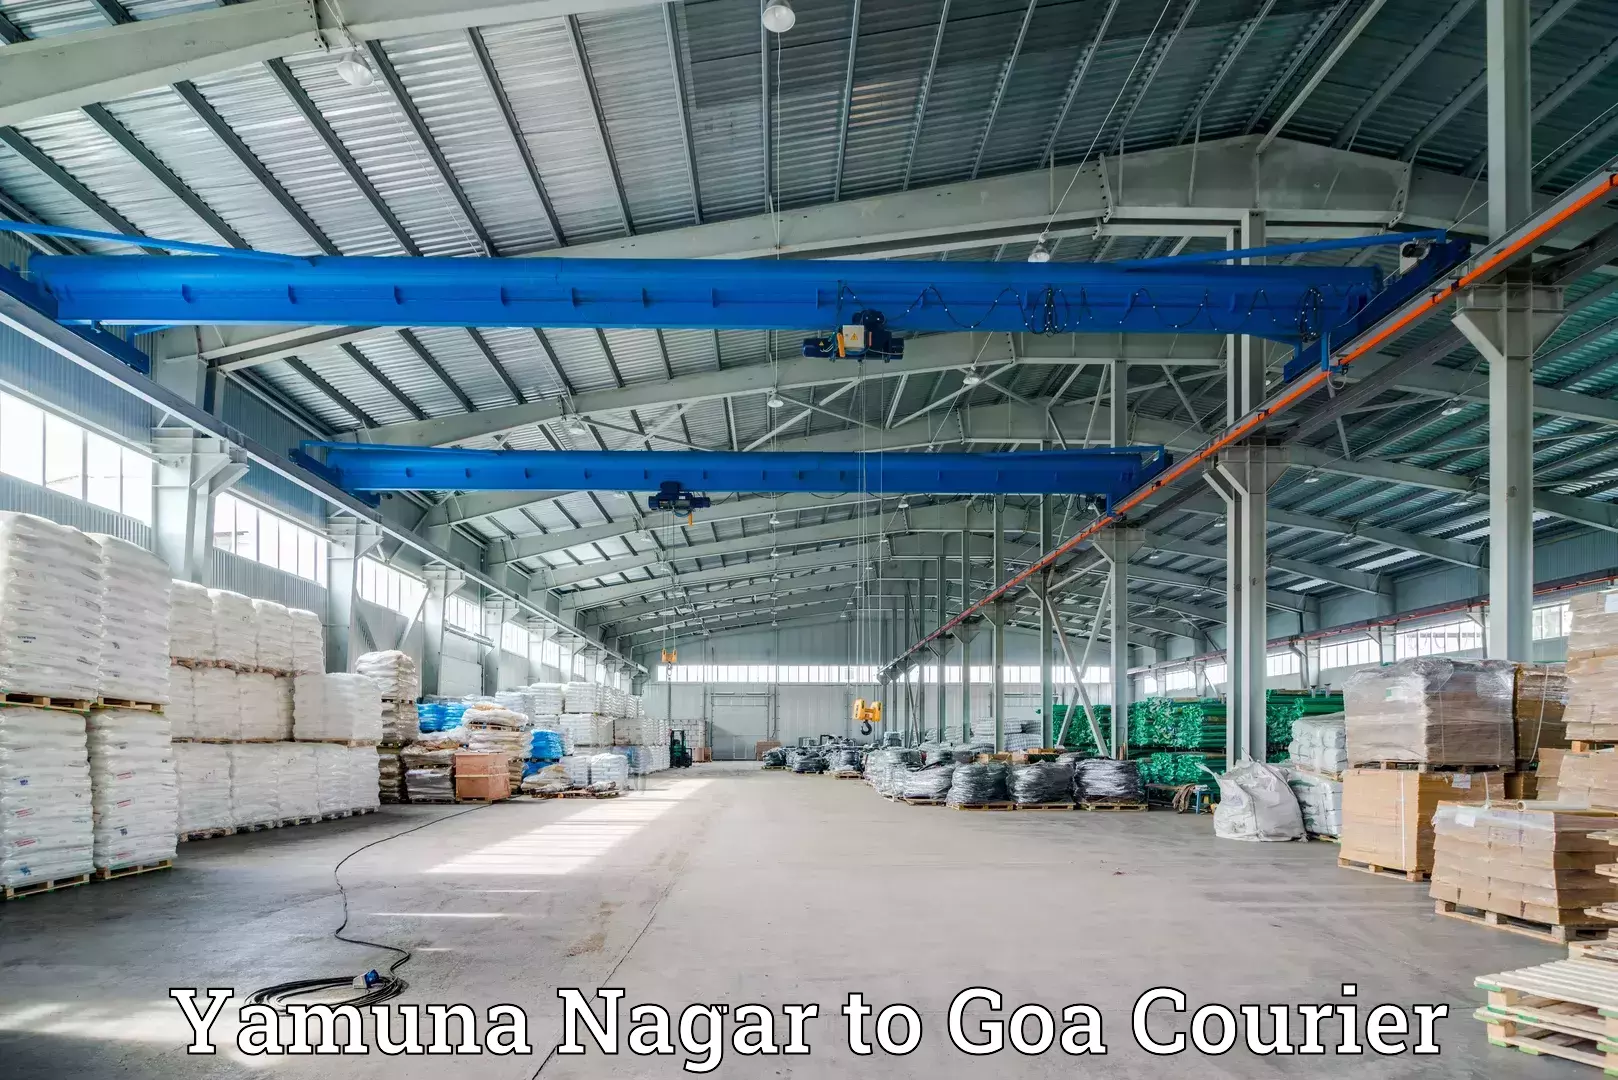 Courier service partnerships Yamuna Nagar to Ponda